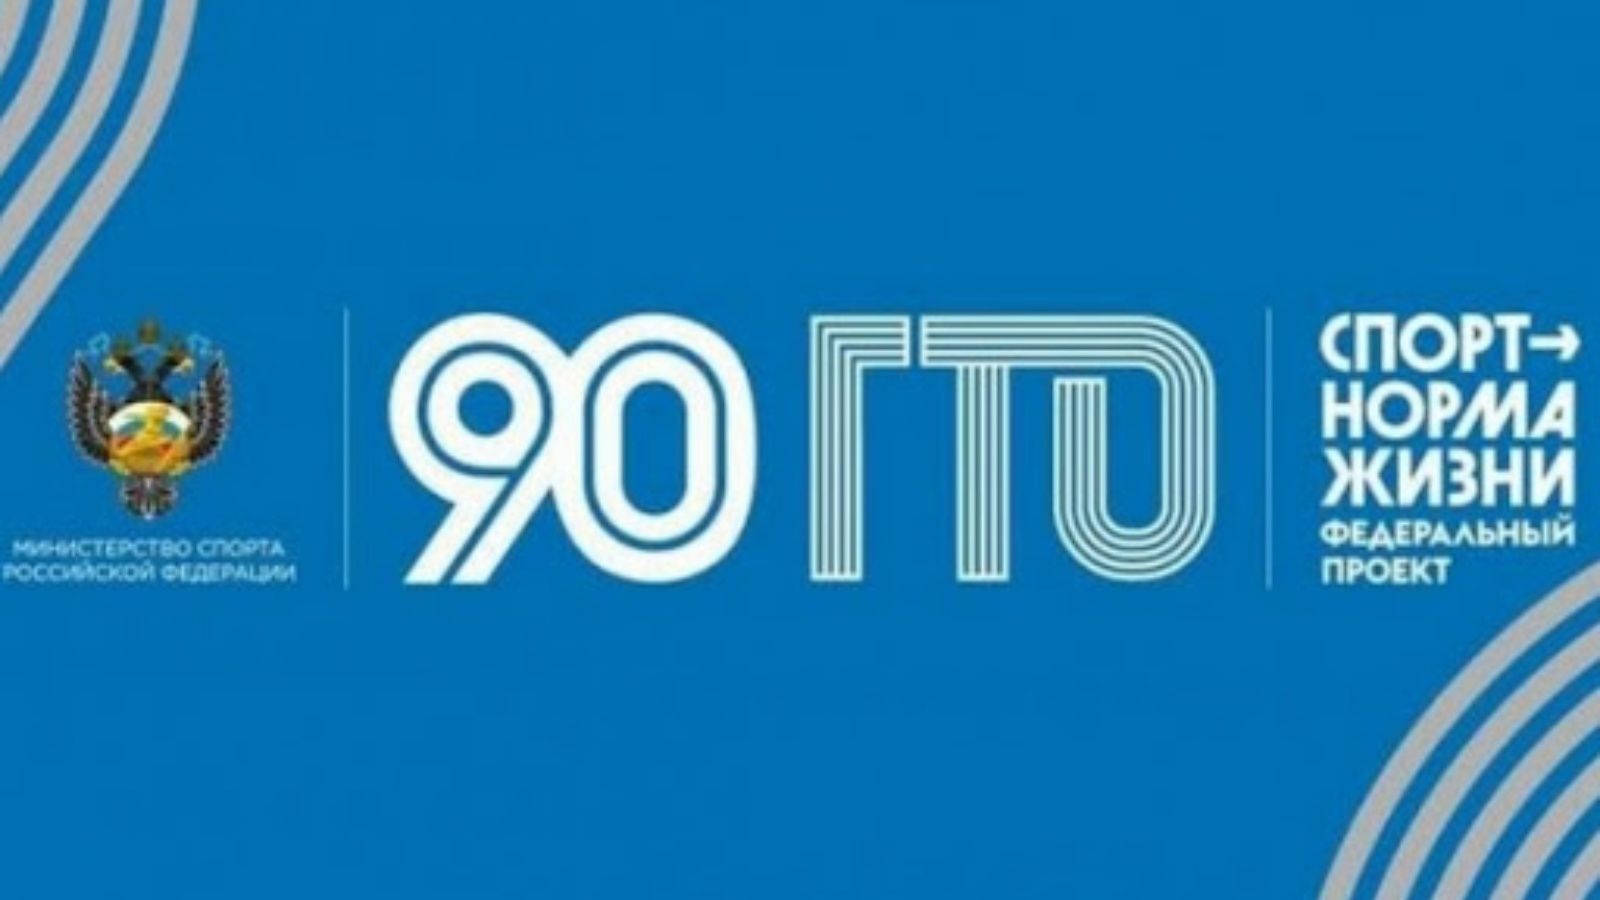 ГТО 90 лет логотип